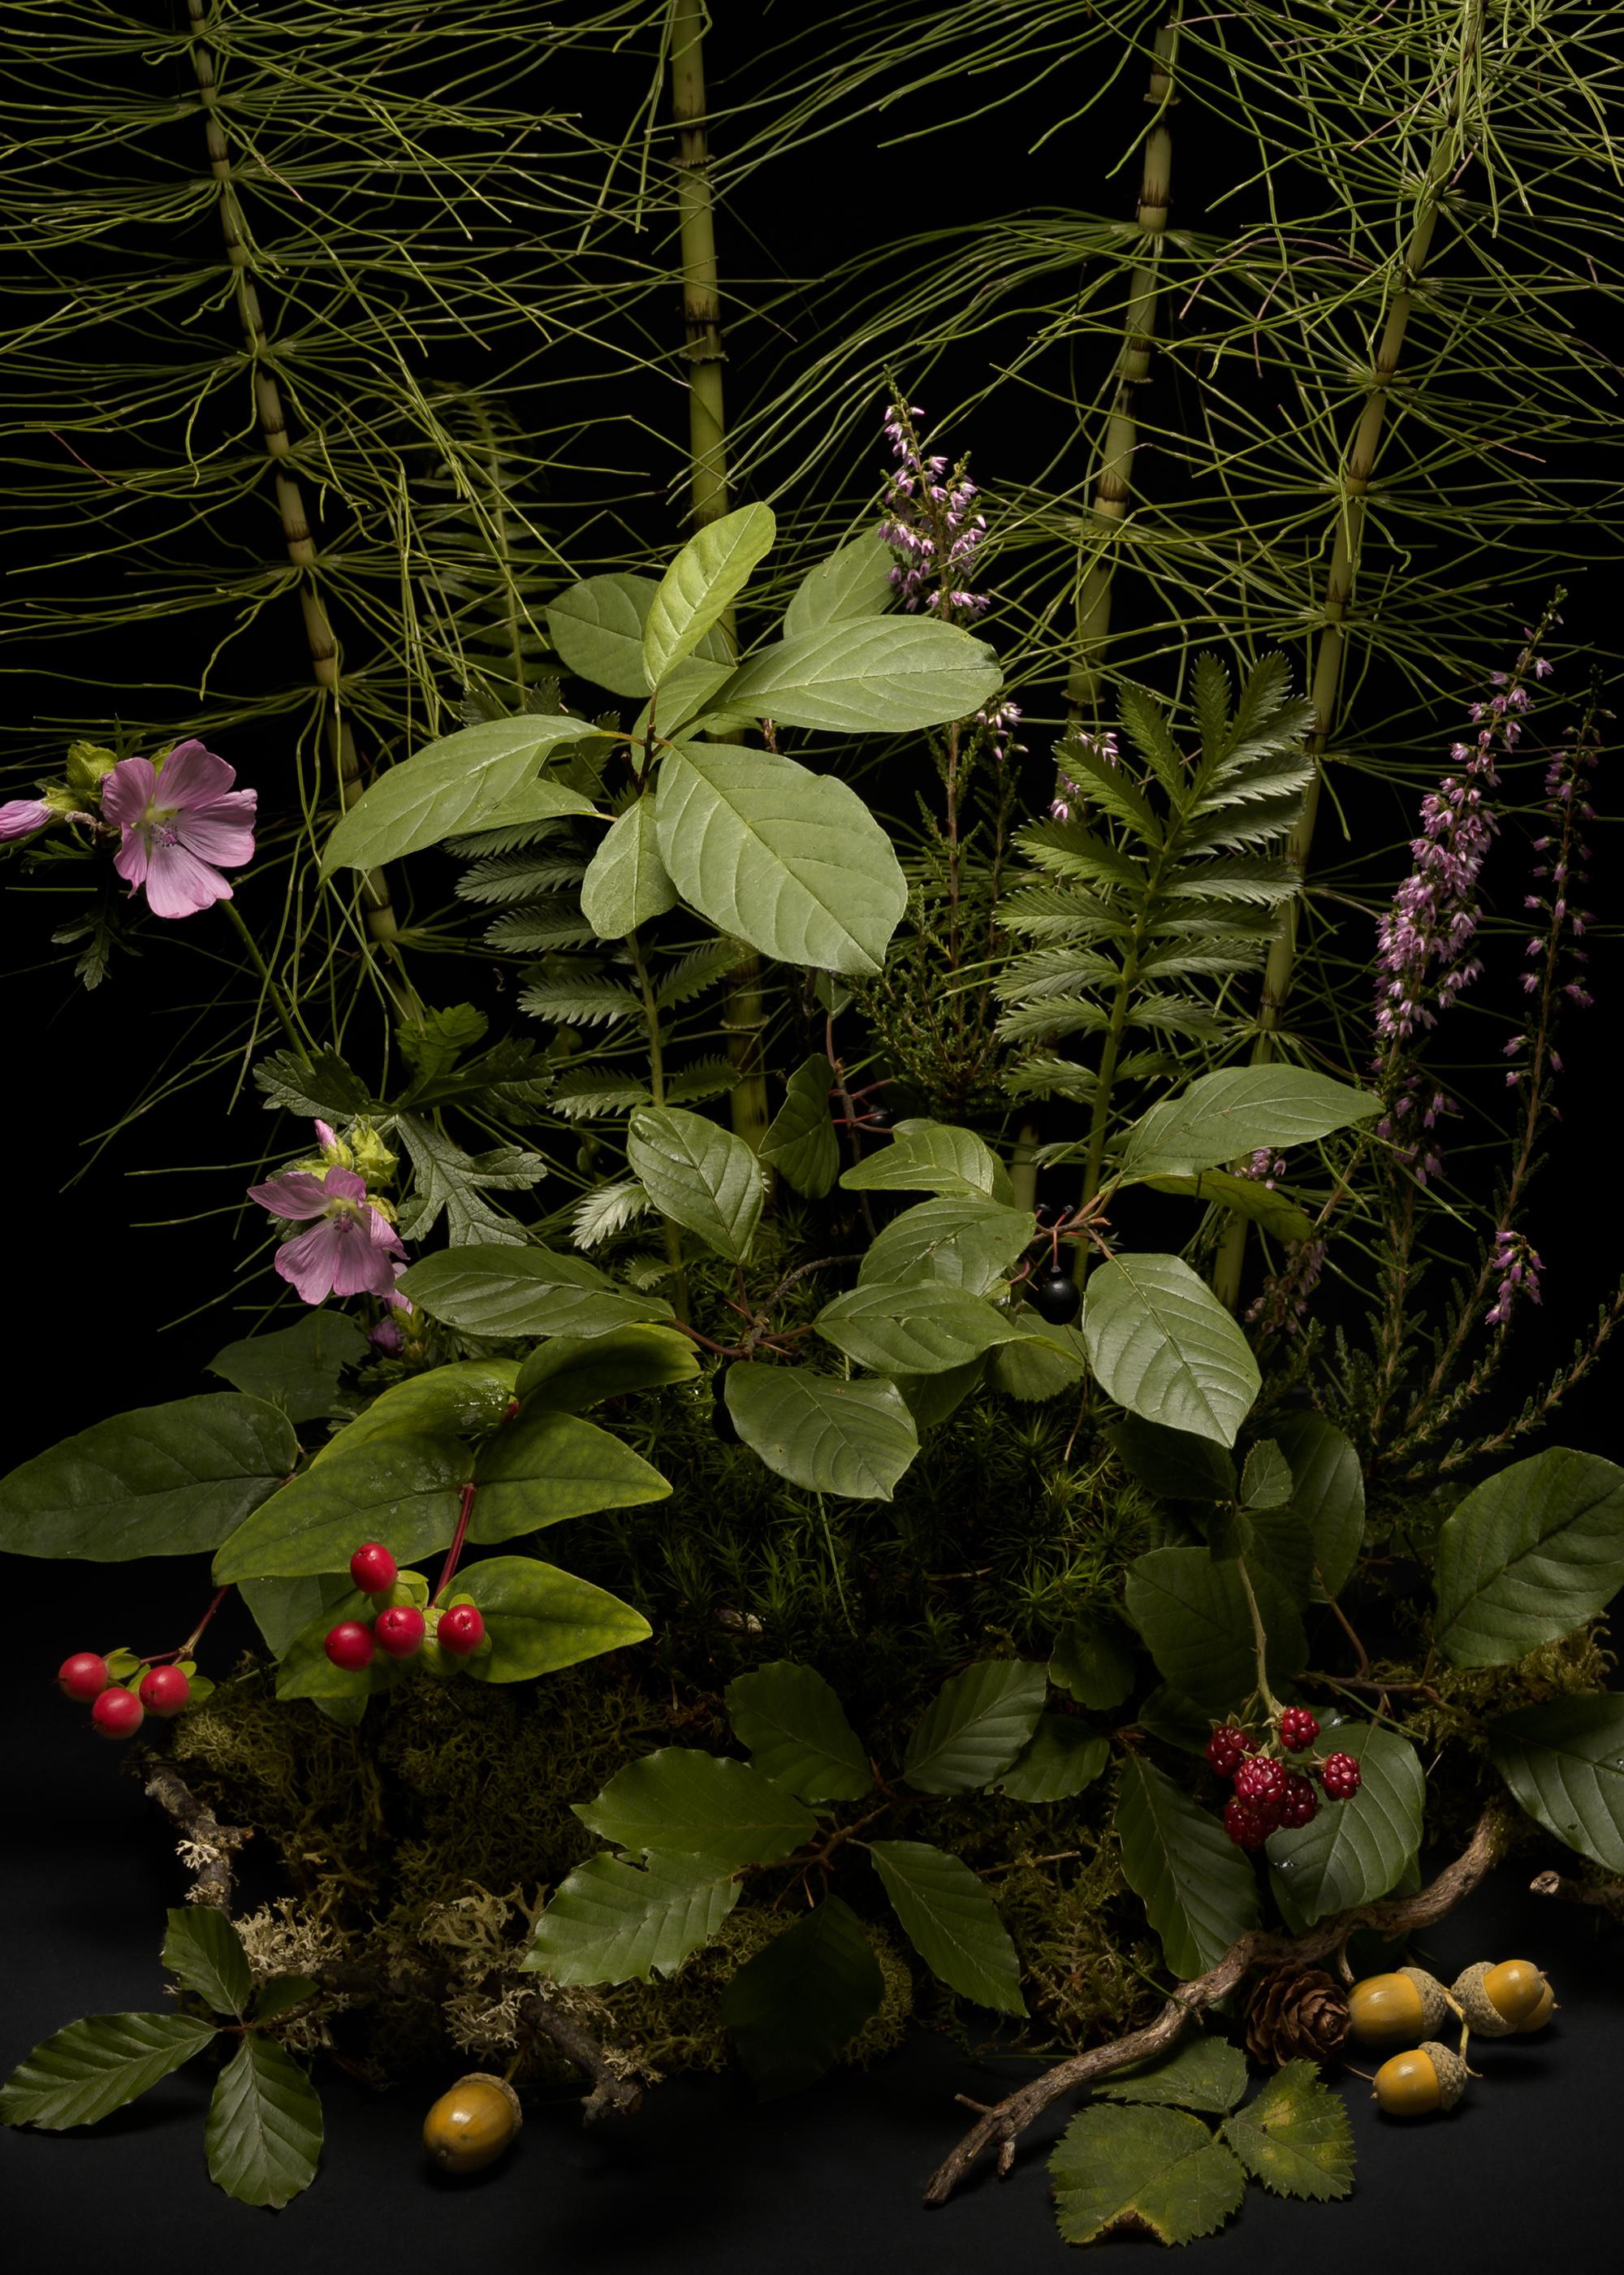 # Flora Dark, queue de cheval, arrangement floral de plantes et de fleurs sauvages - Print de Jasper Goodall